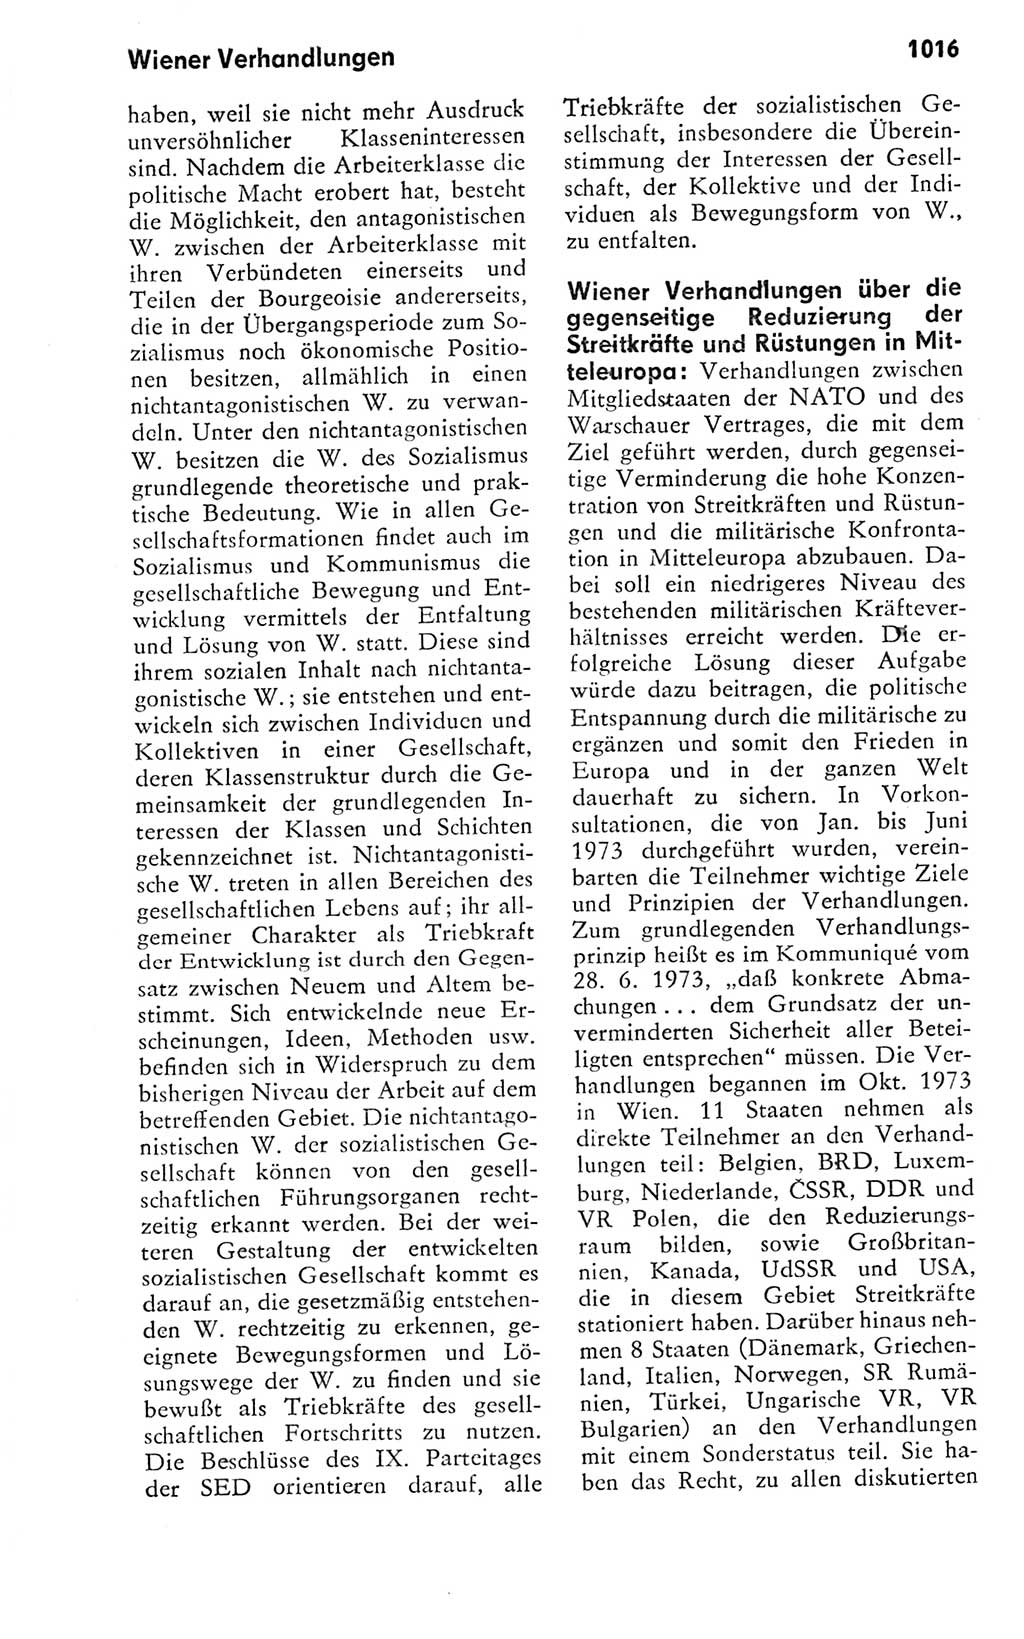 Kleines politisches Wörterbuch [Deutsche Demokratische Republik (DDR)] 1978, Seite 1016 (Kl. pol. Wb. DDR 1978, S. 1016)